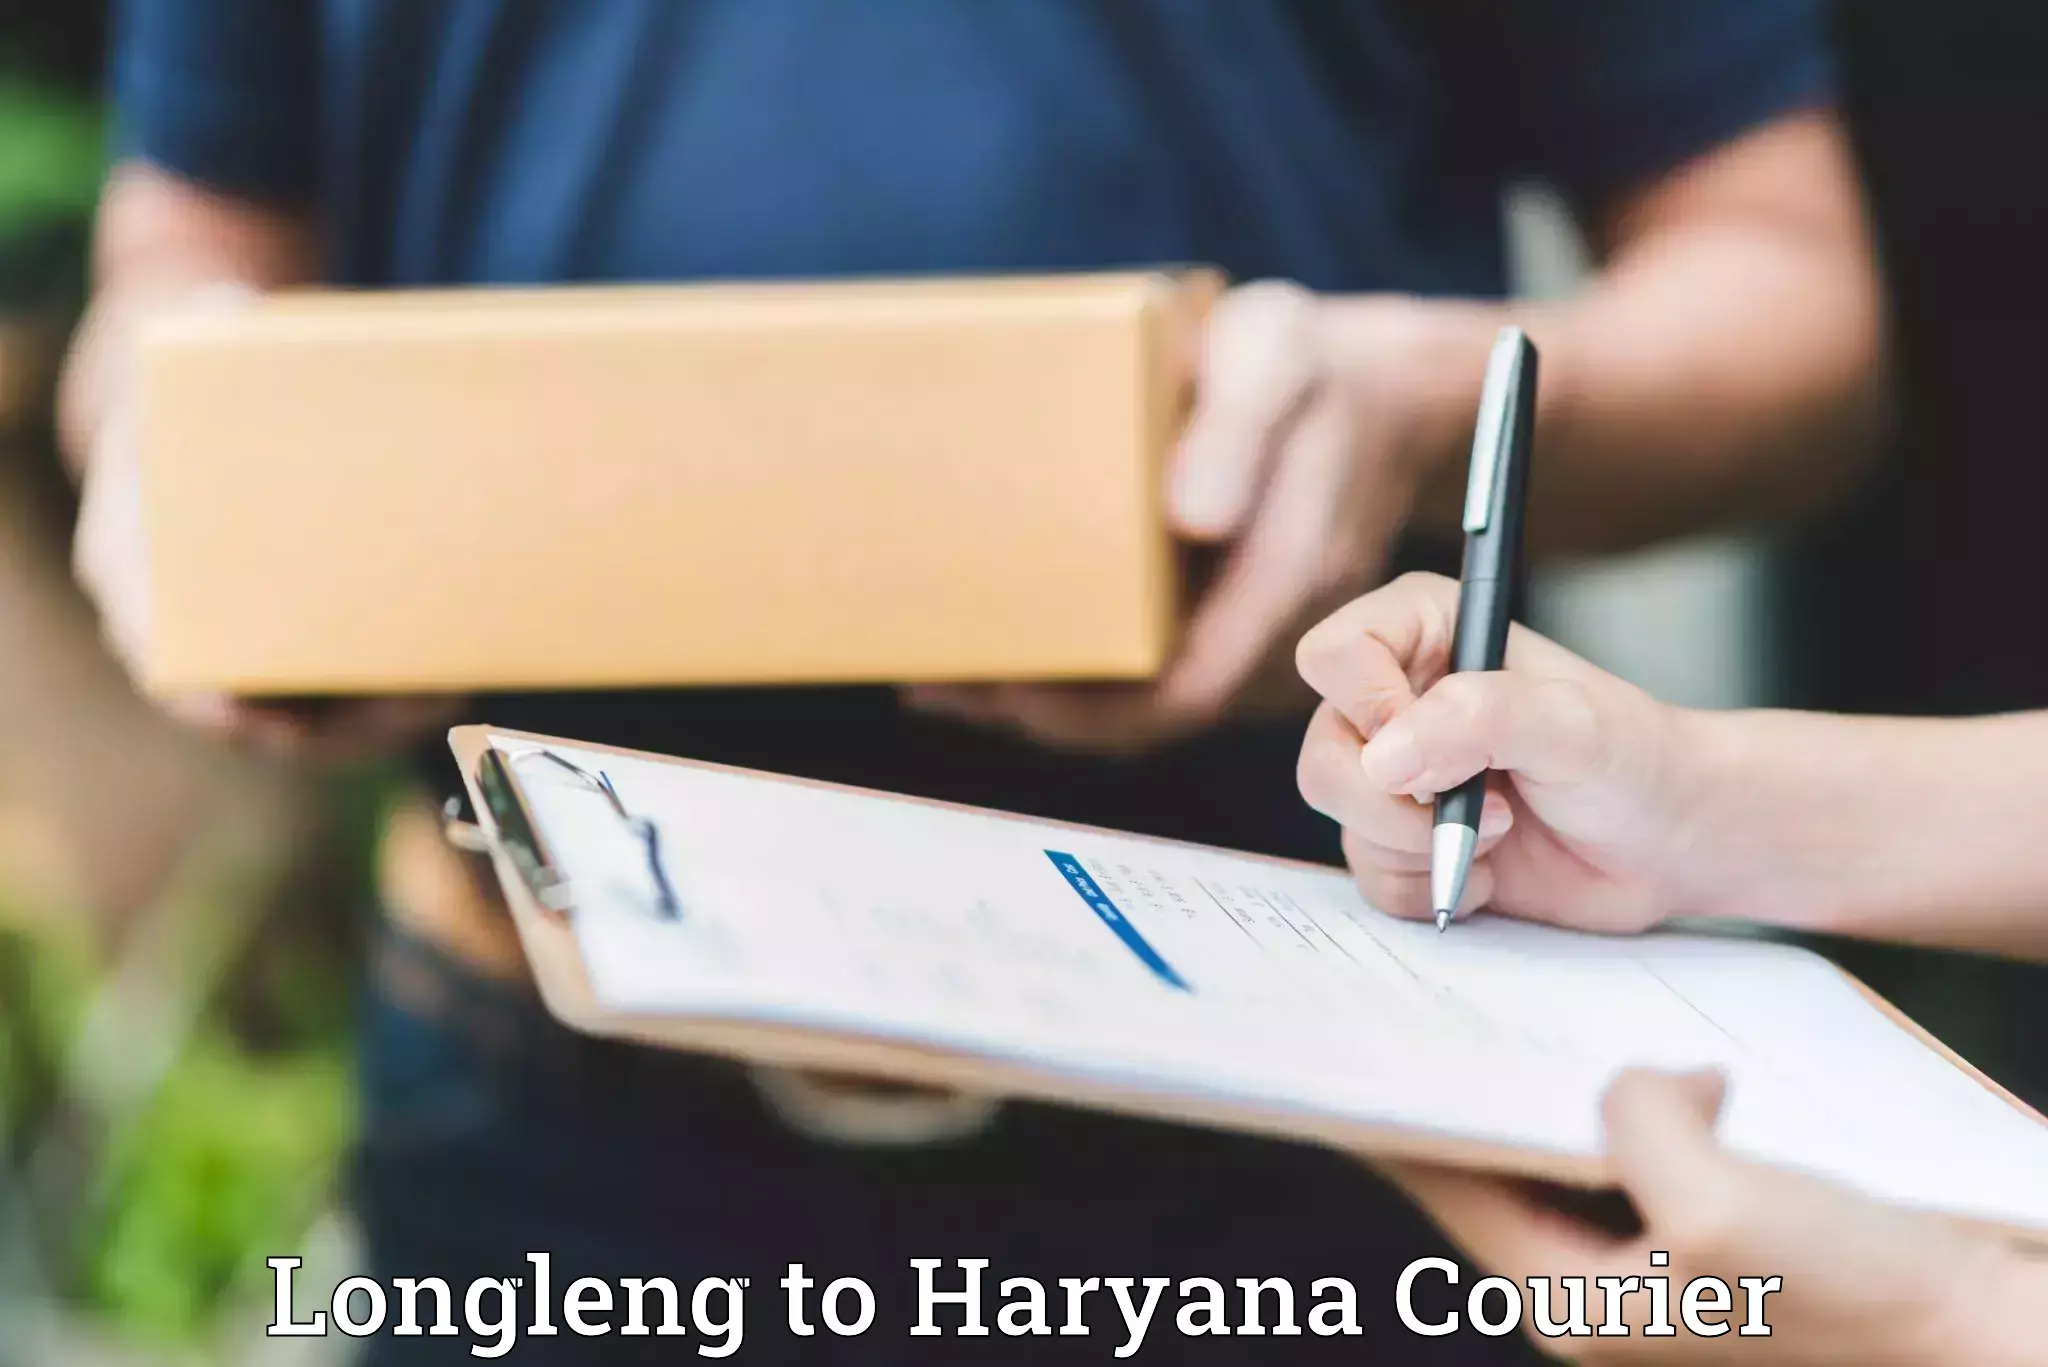 Home shifting experts Longleng to Chaudhary Charan Singh Haryana Agricultural University Hisar